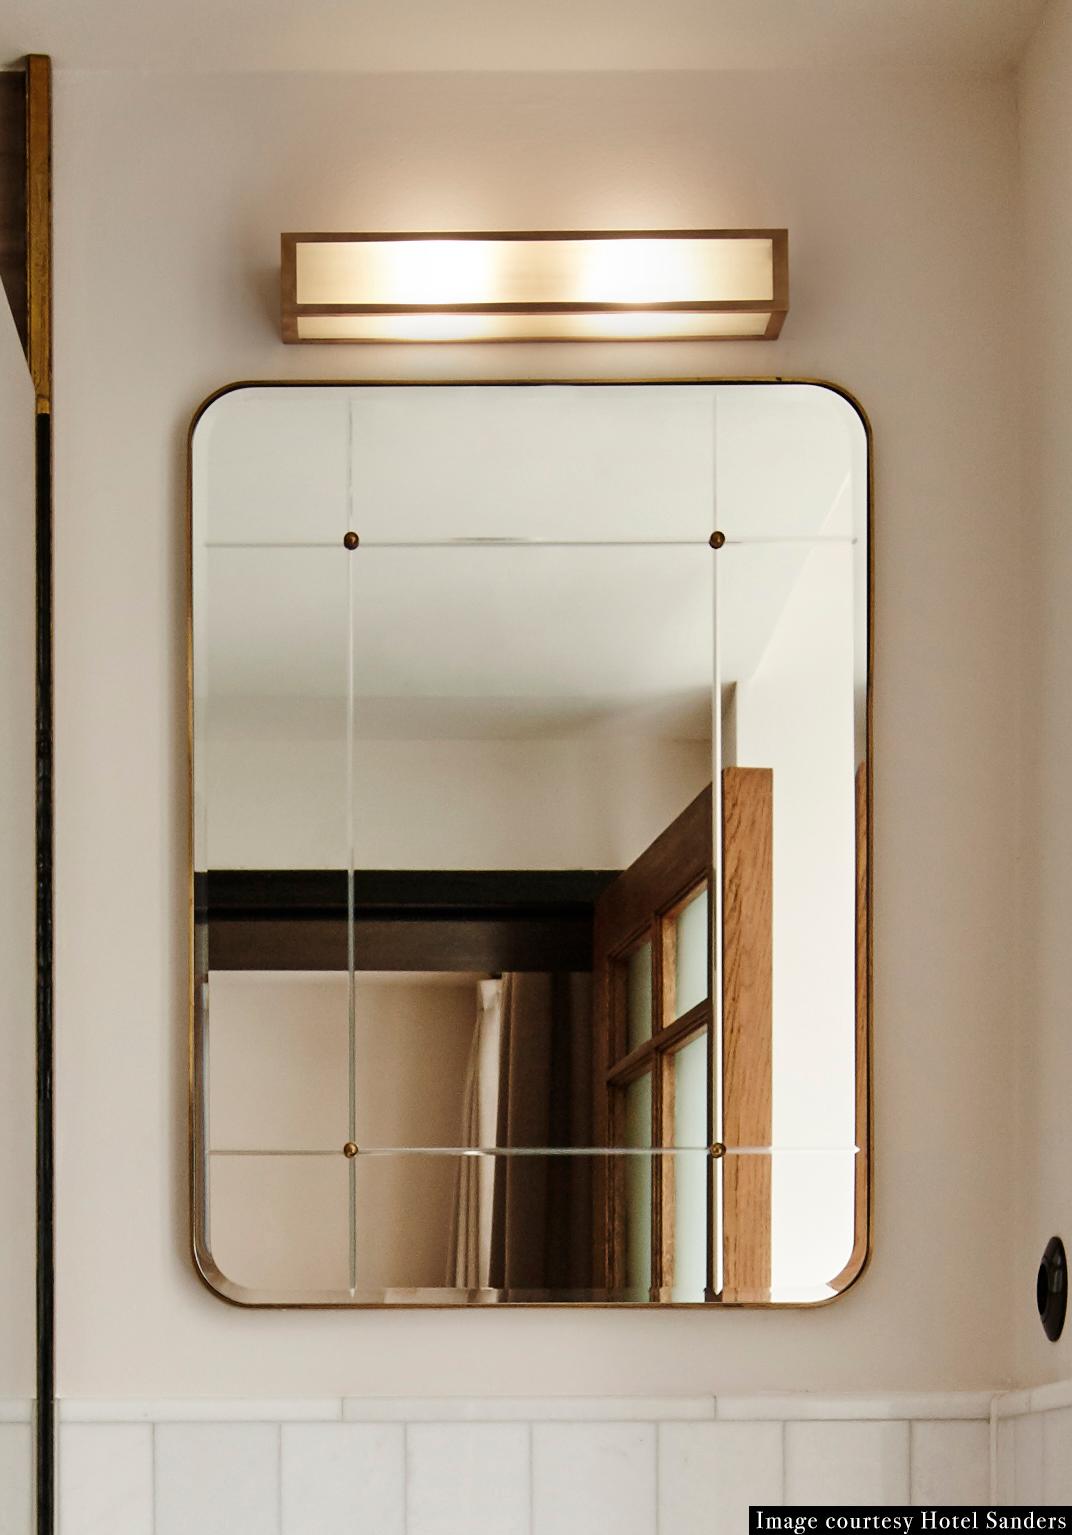 Ein Spiegel aus geschliffenem Glas und handpatiniertem Messing, mit Messingnieten. Speziell für das Sanders, Kopenhagens führendes Luxus-Boutique-Hotel, entwickelt.

Erhältlich in zwei Größen. Handgefertigt auf Bestellung in